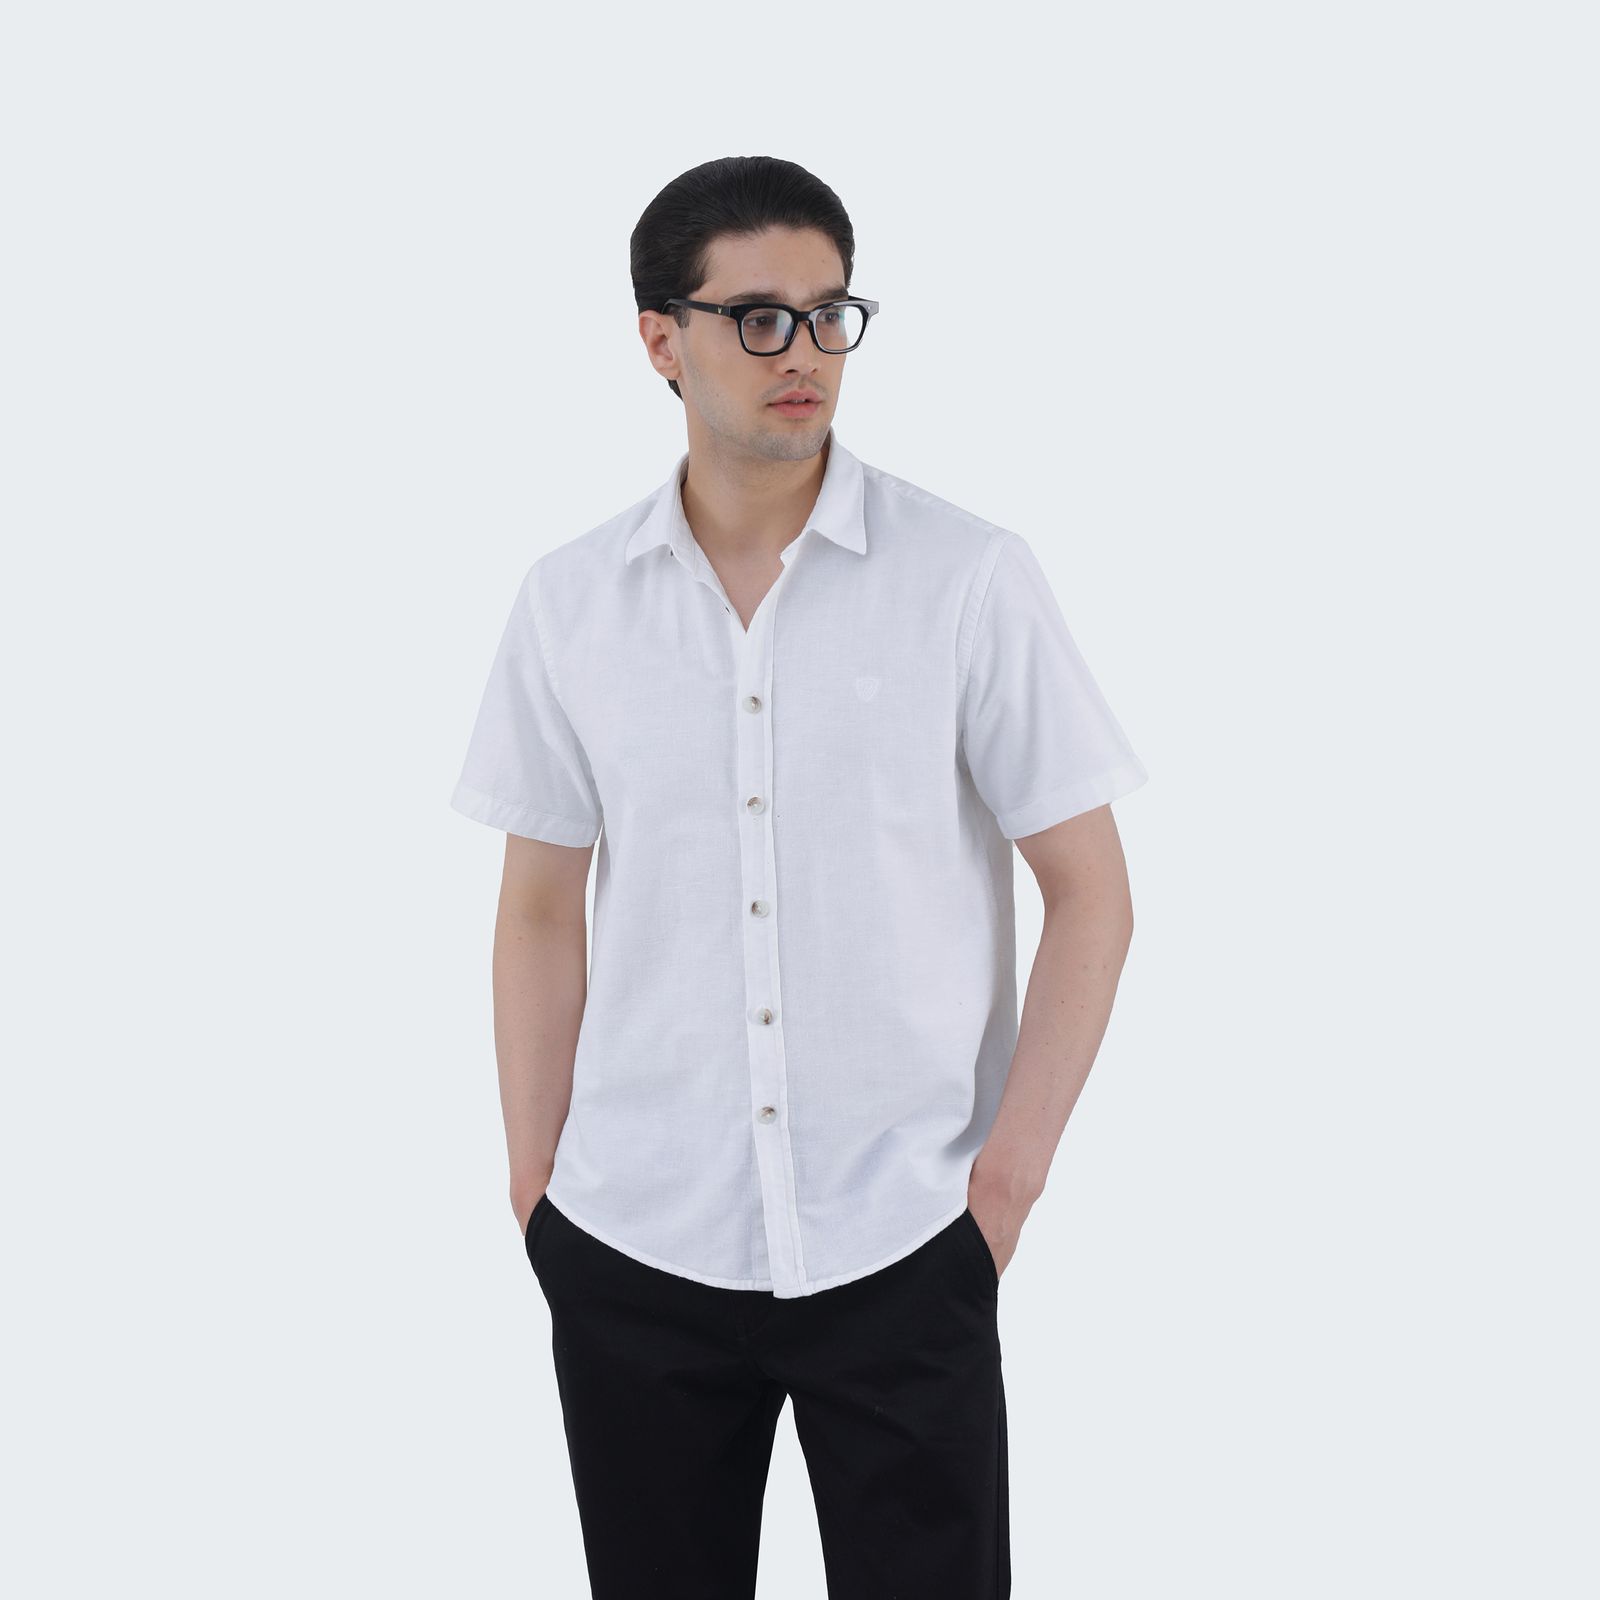 پیراهن آستین کوتاه مردانه پاتن جامه مدل 121221020267000 رنگ سفید -  - 2